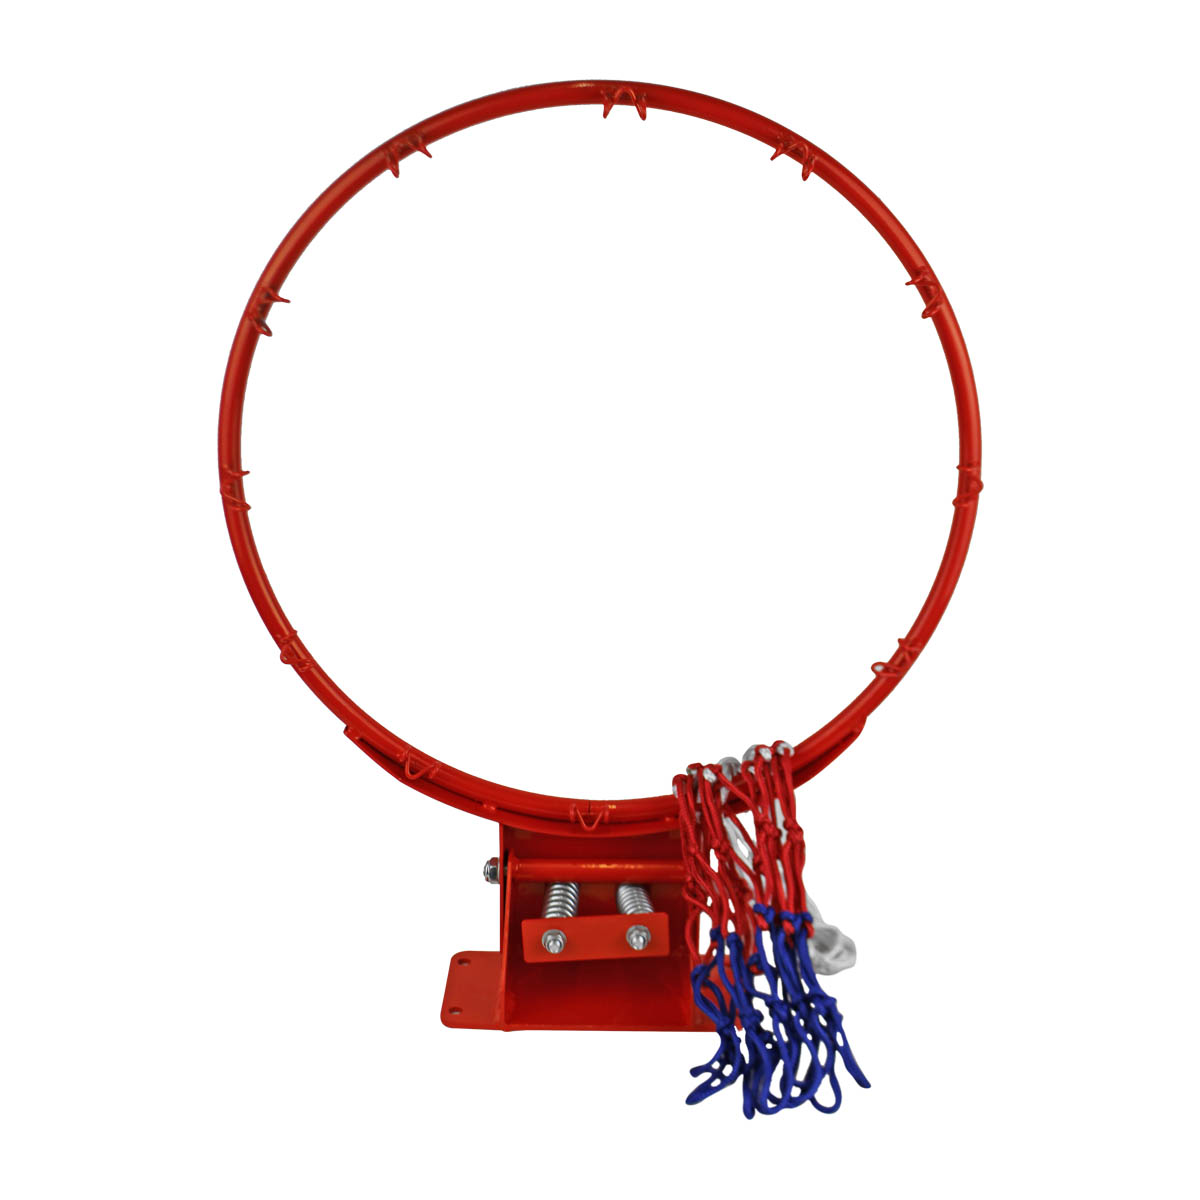 Basketbalová obroučka MASTER 16 mm odpružená se síťkou